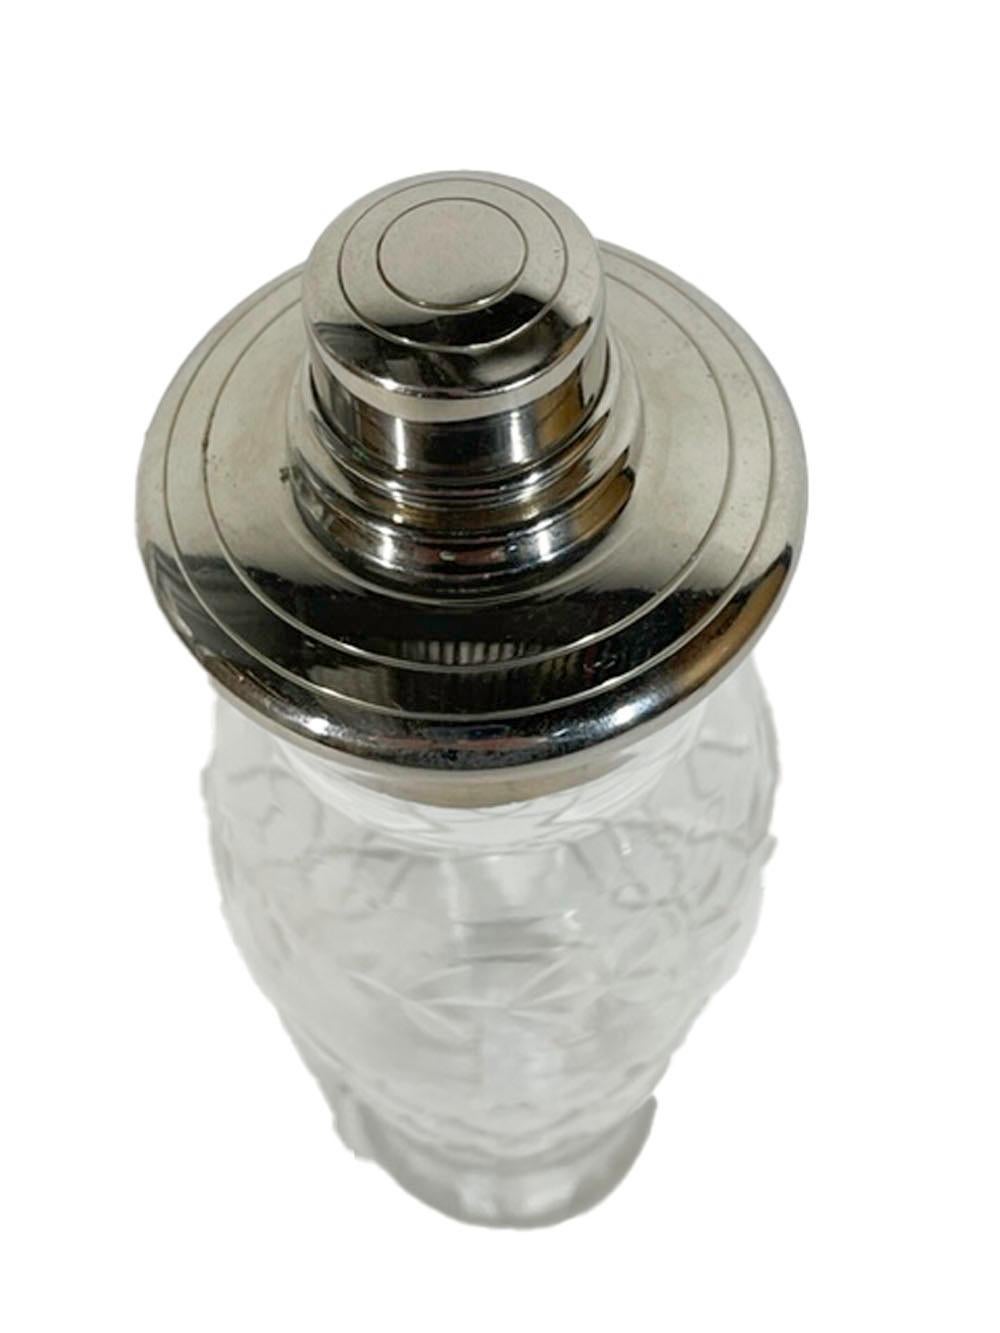 Shaker en verre taillé Art Déco avec couvercle verseur central en forme de dôme argenté avec passoire intégrée et joint en liège.